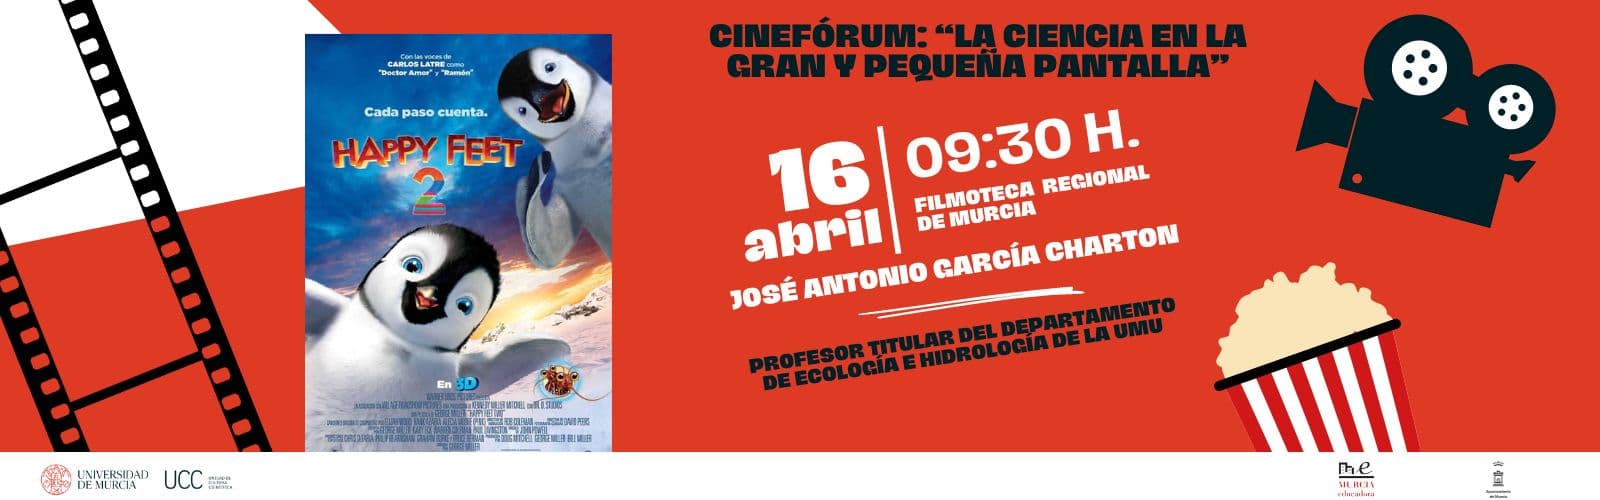 La UMU reúne a 400 estudiantes en la Filmoteca Regional con el cinefórum de “Happy Feet II” junto a José Antonio García Charton